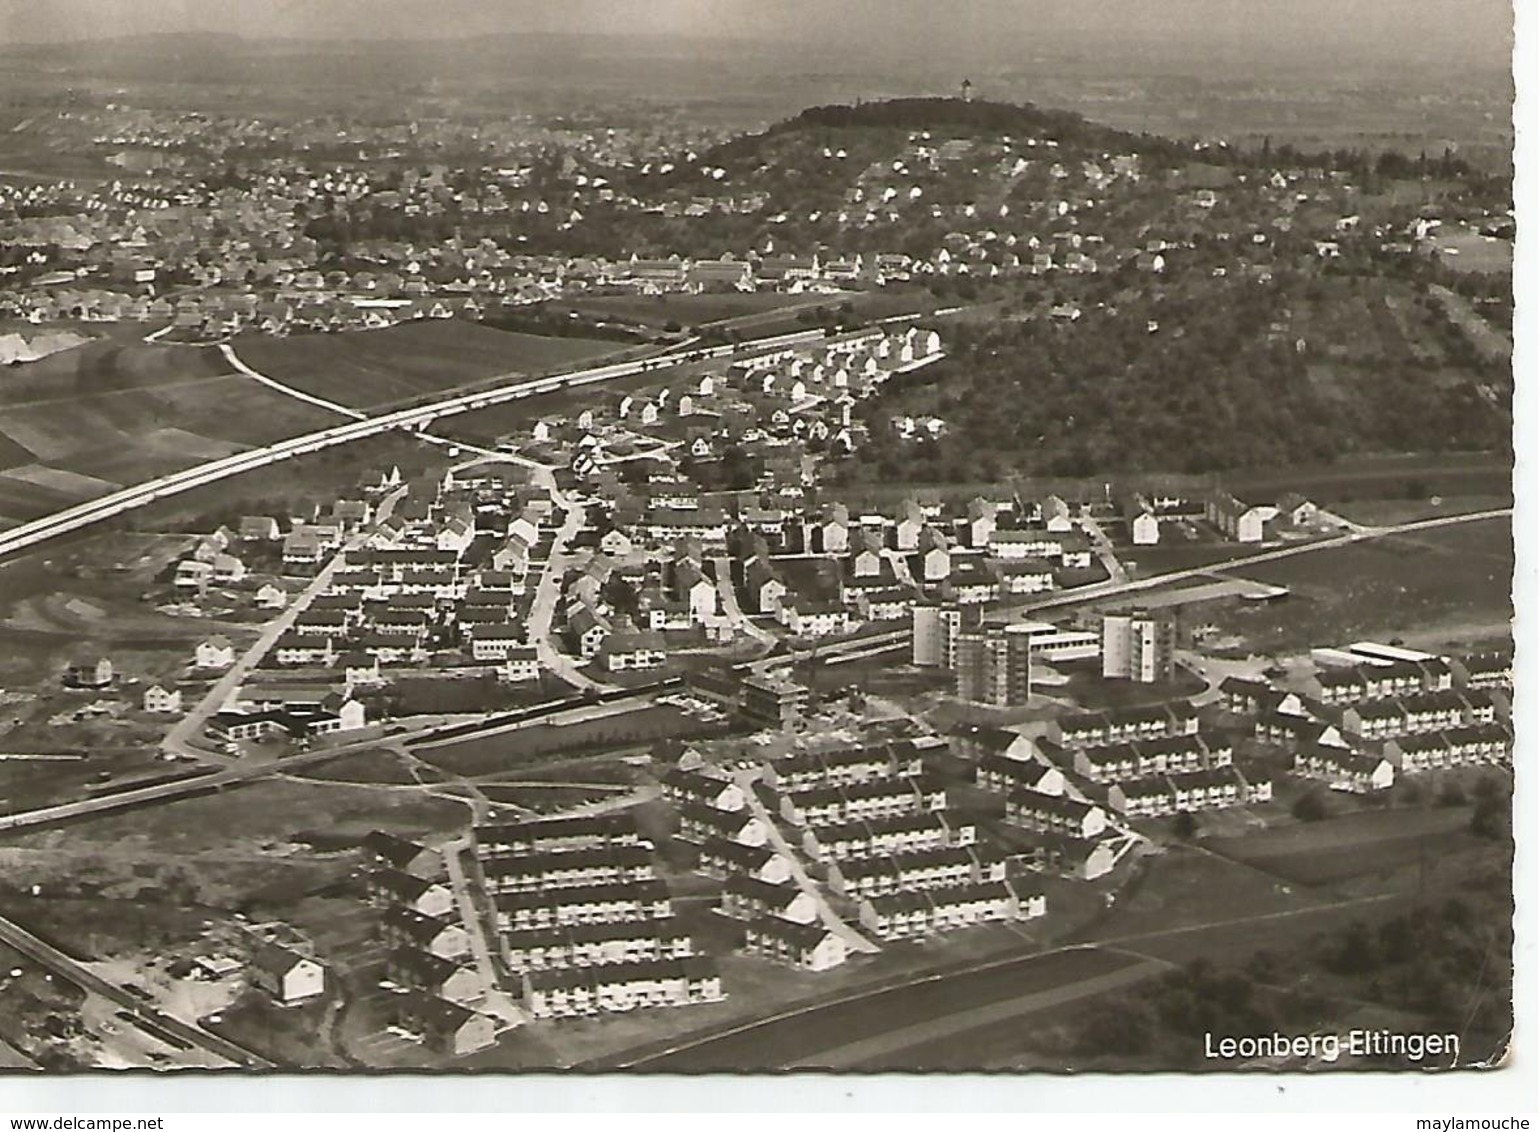 Leonberg Eltingen - Leonberg